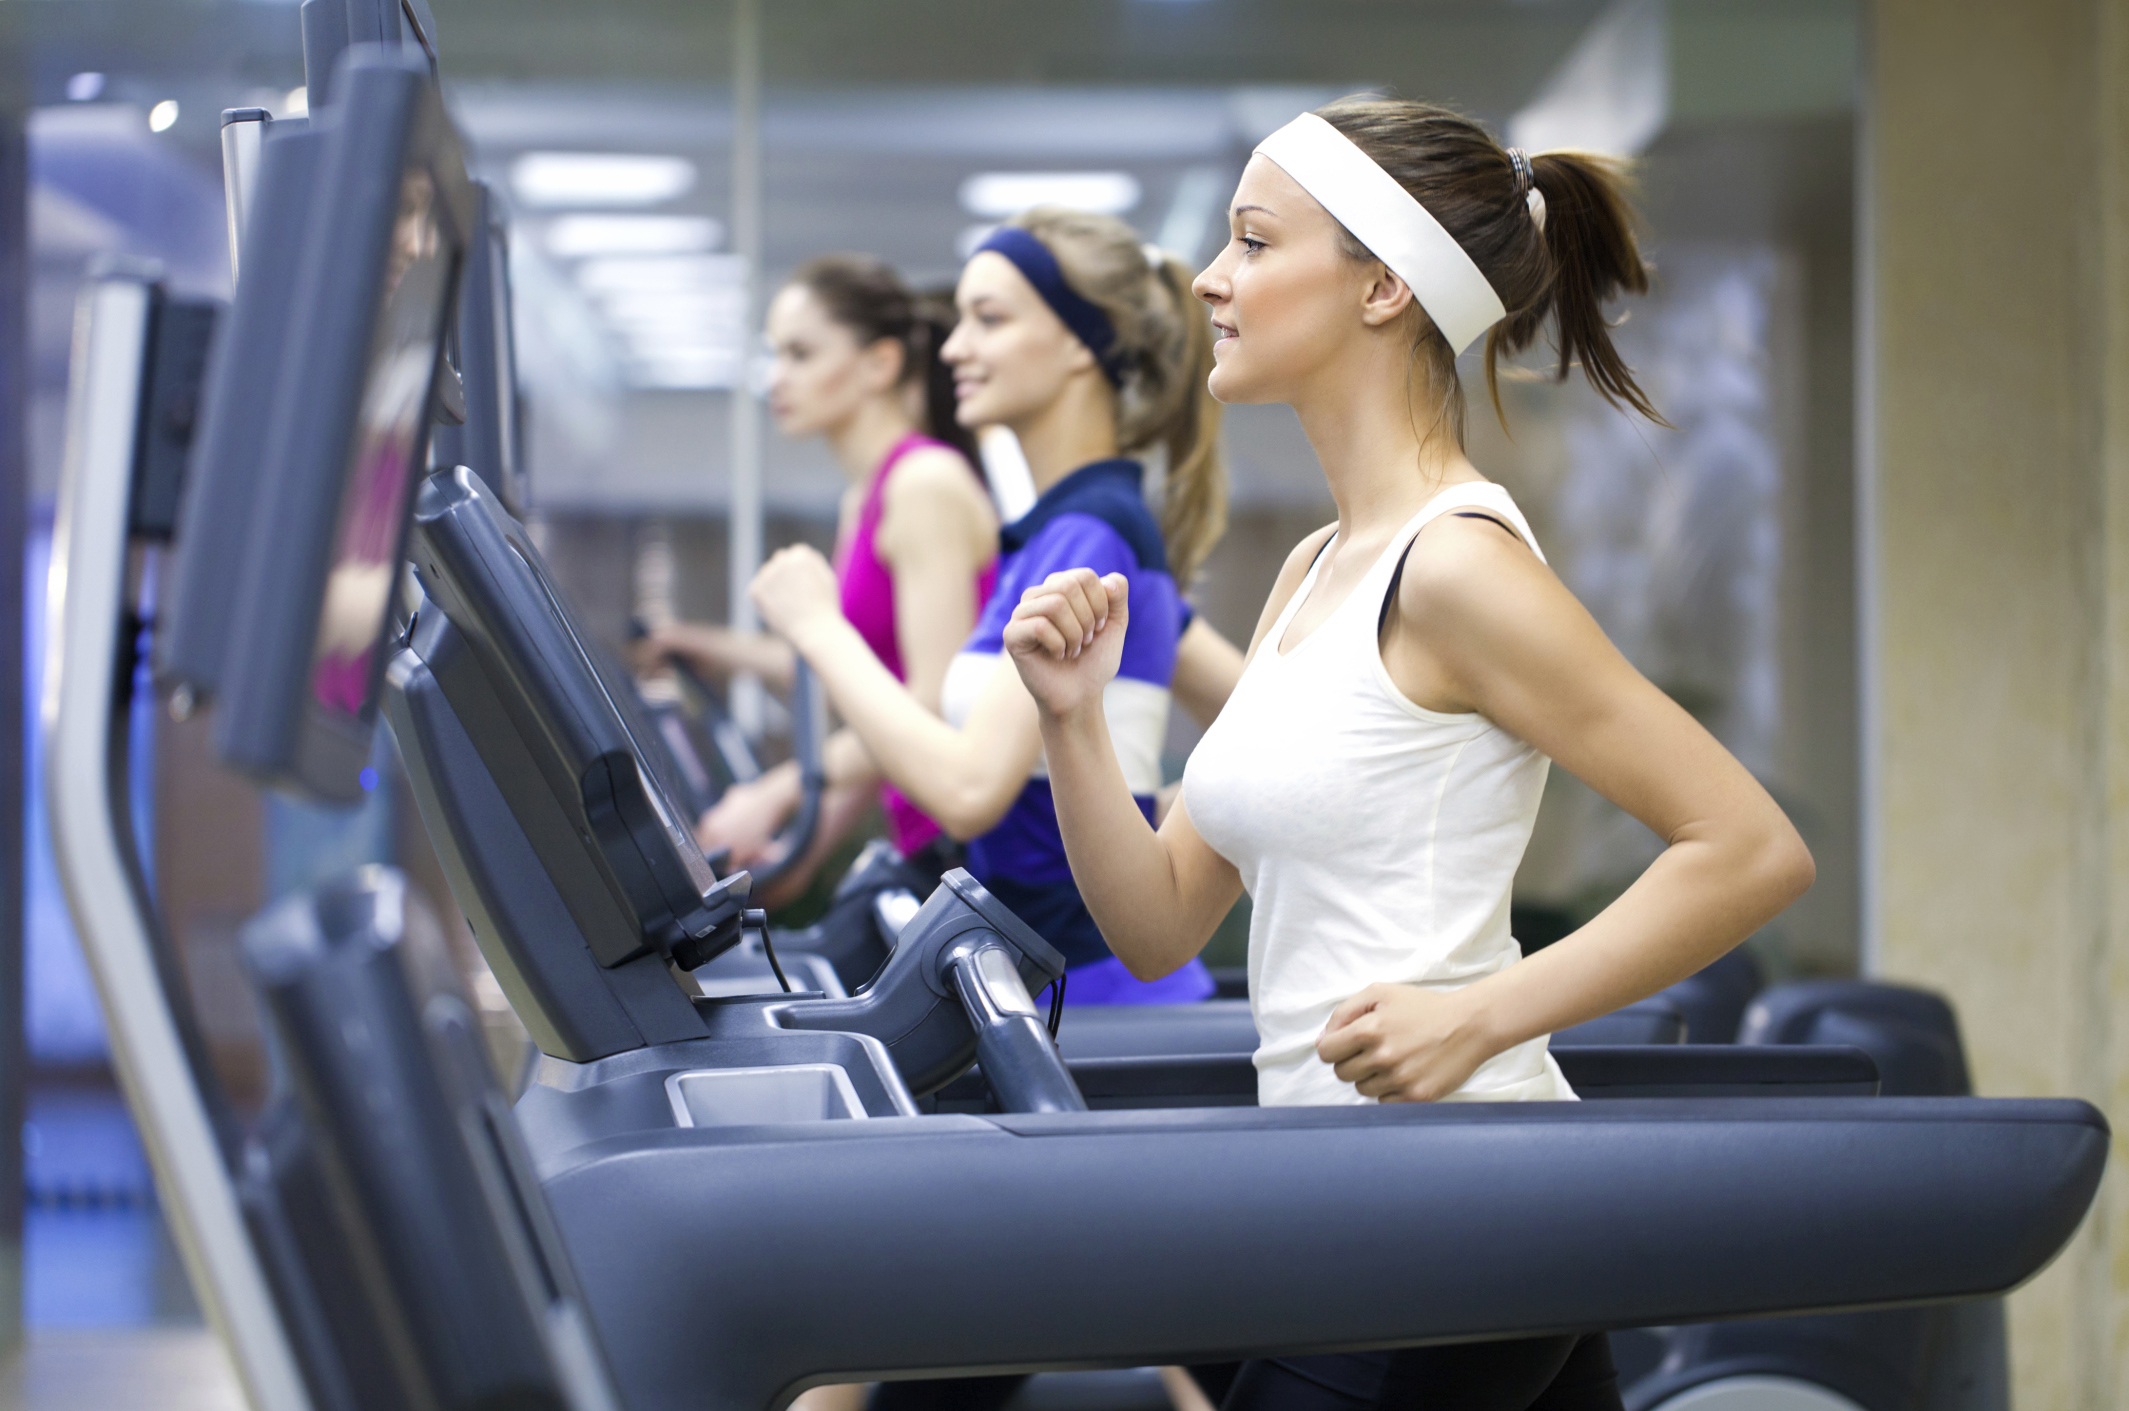 Three women on treadmills